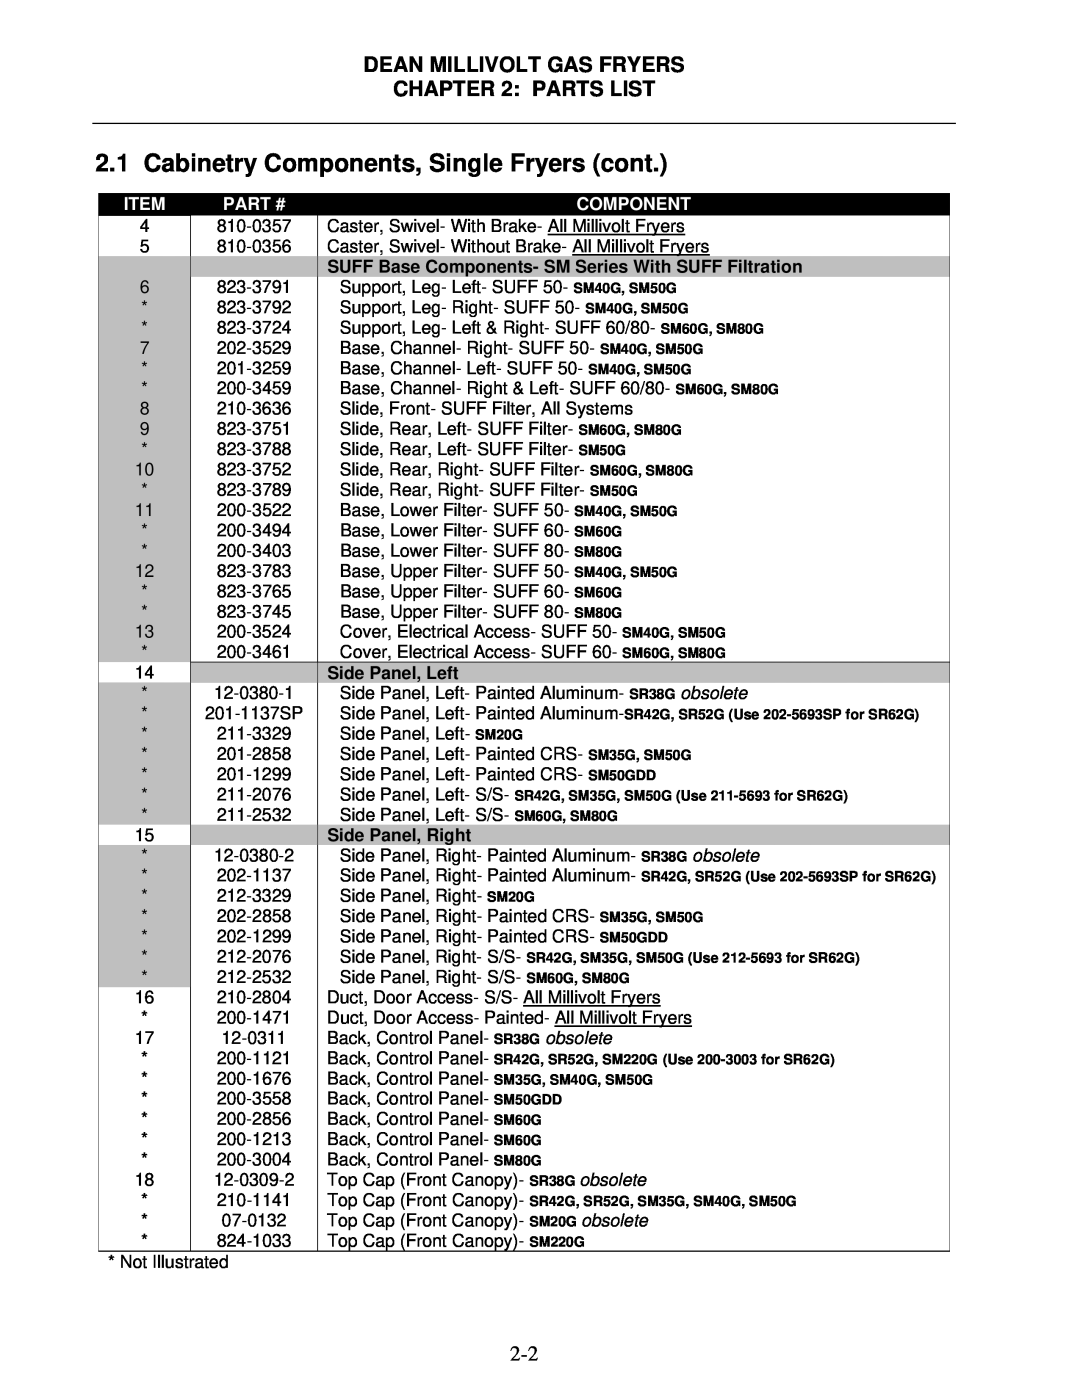 Frymaster Super Marathon Series Cabinetry Components, Single Fryers cont, Dean Millivolt Gas Fryers : Parts List, Item 